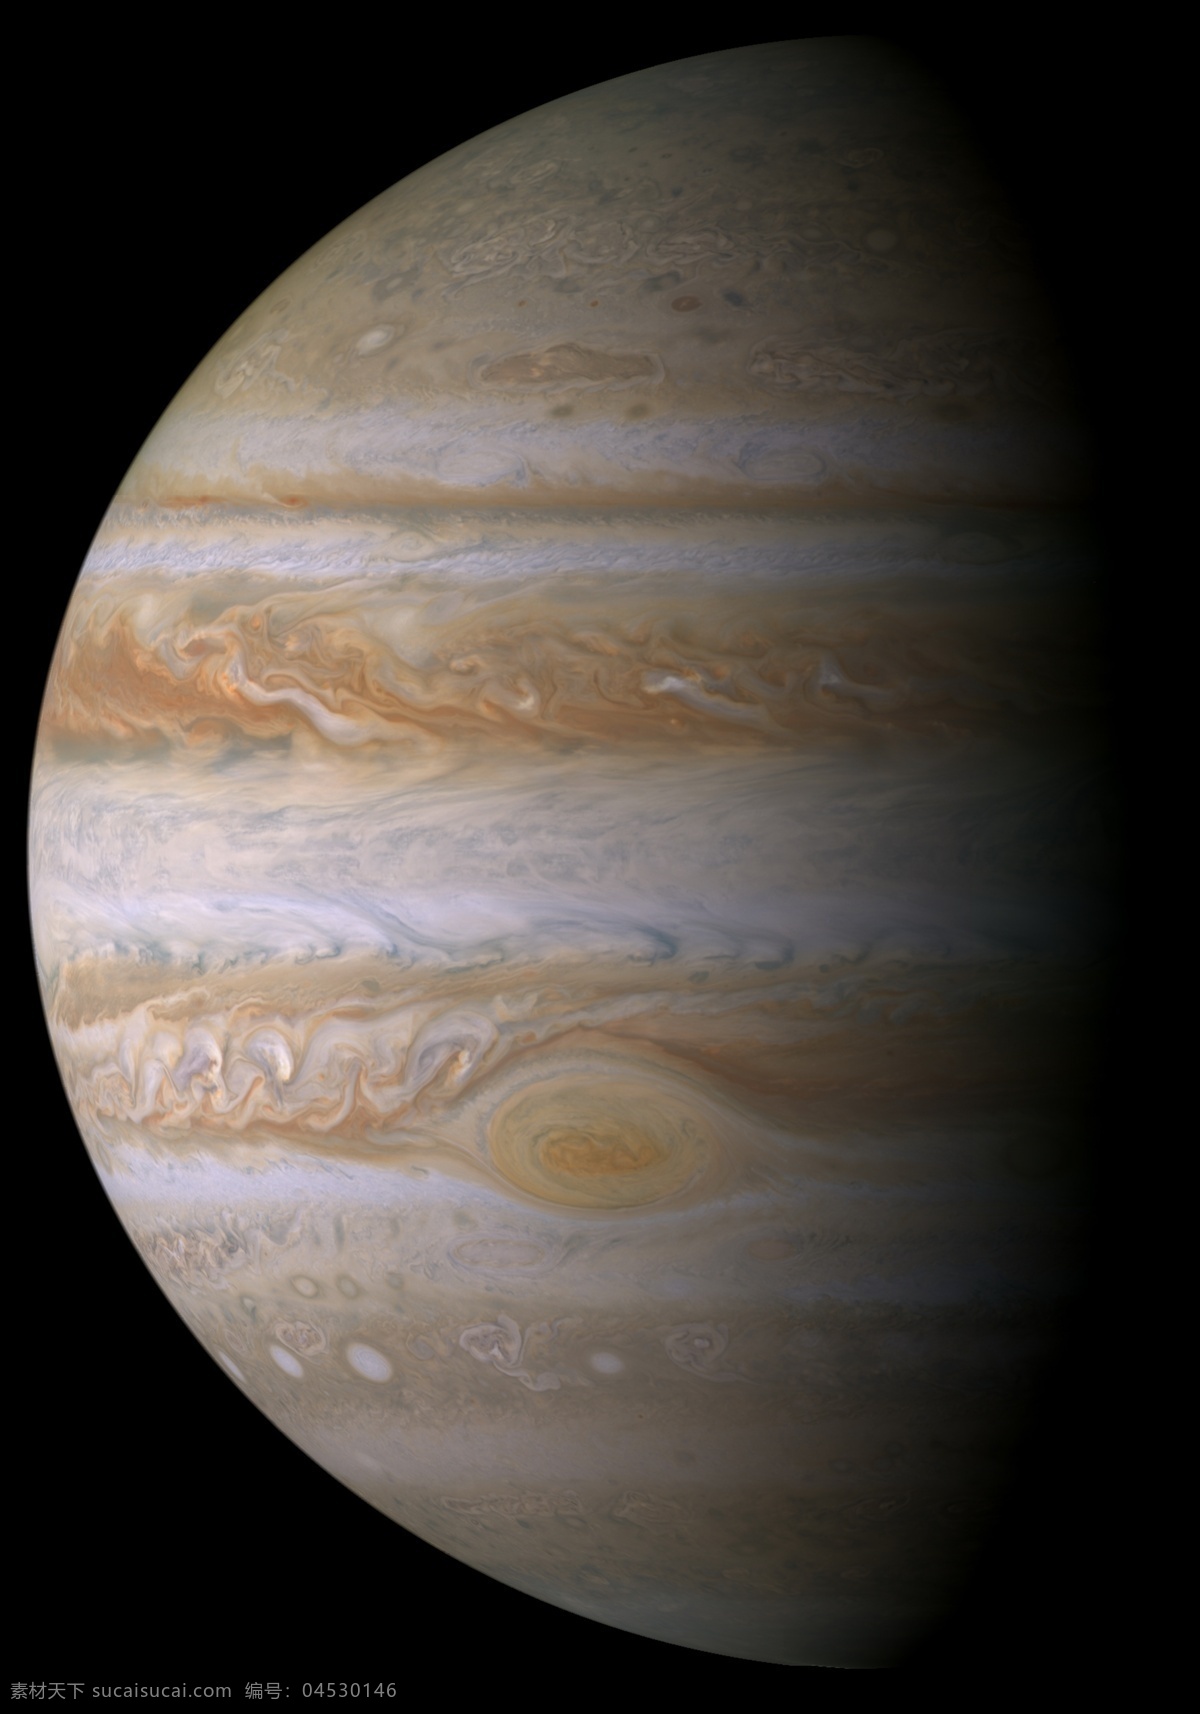 木星日照半球 木星 日照 半球 现代科技 科学研究 摄影图库